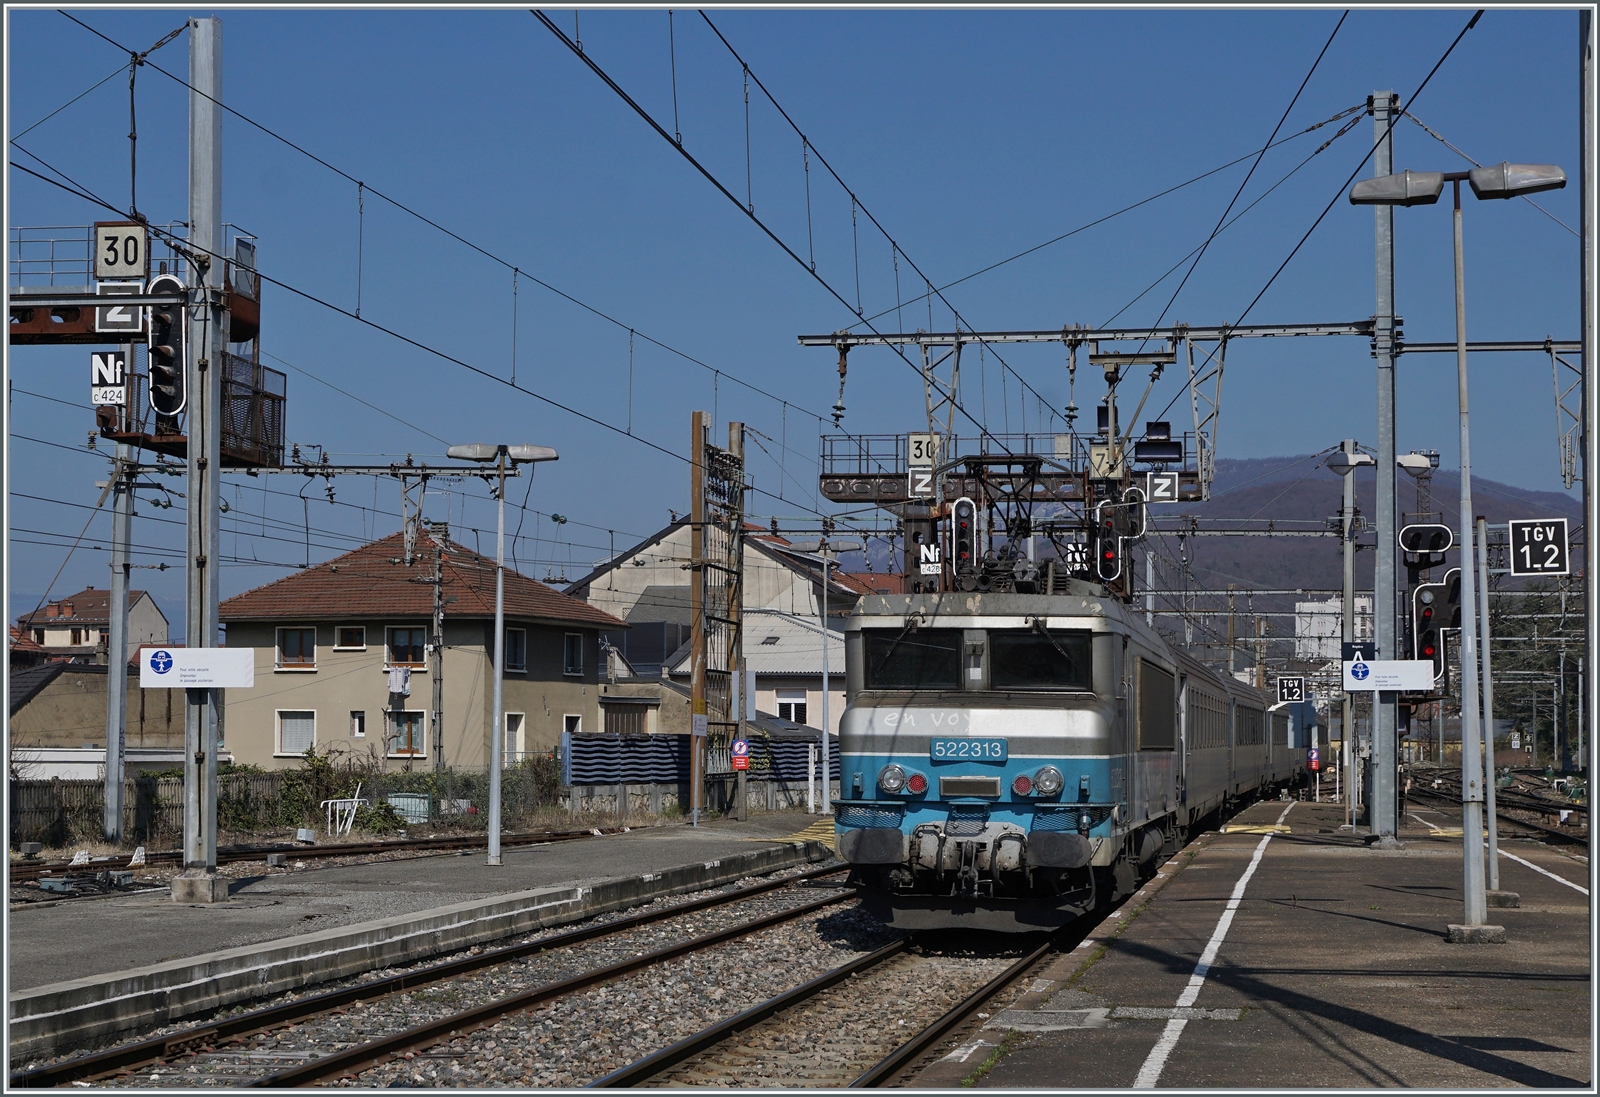 Die SNCF BB 22313 verlässt Aix-Les Bains mit ihrem TER nach Lyon. 

22. März 2022